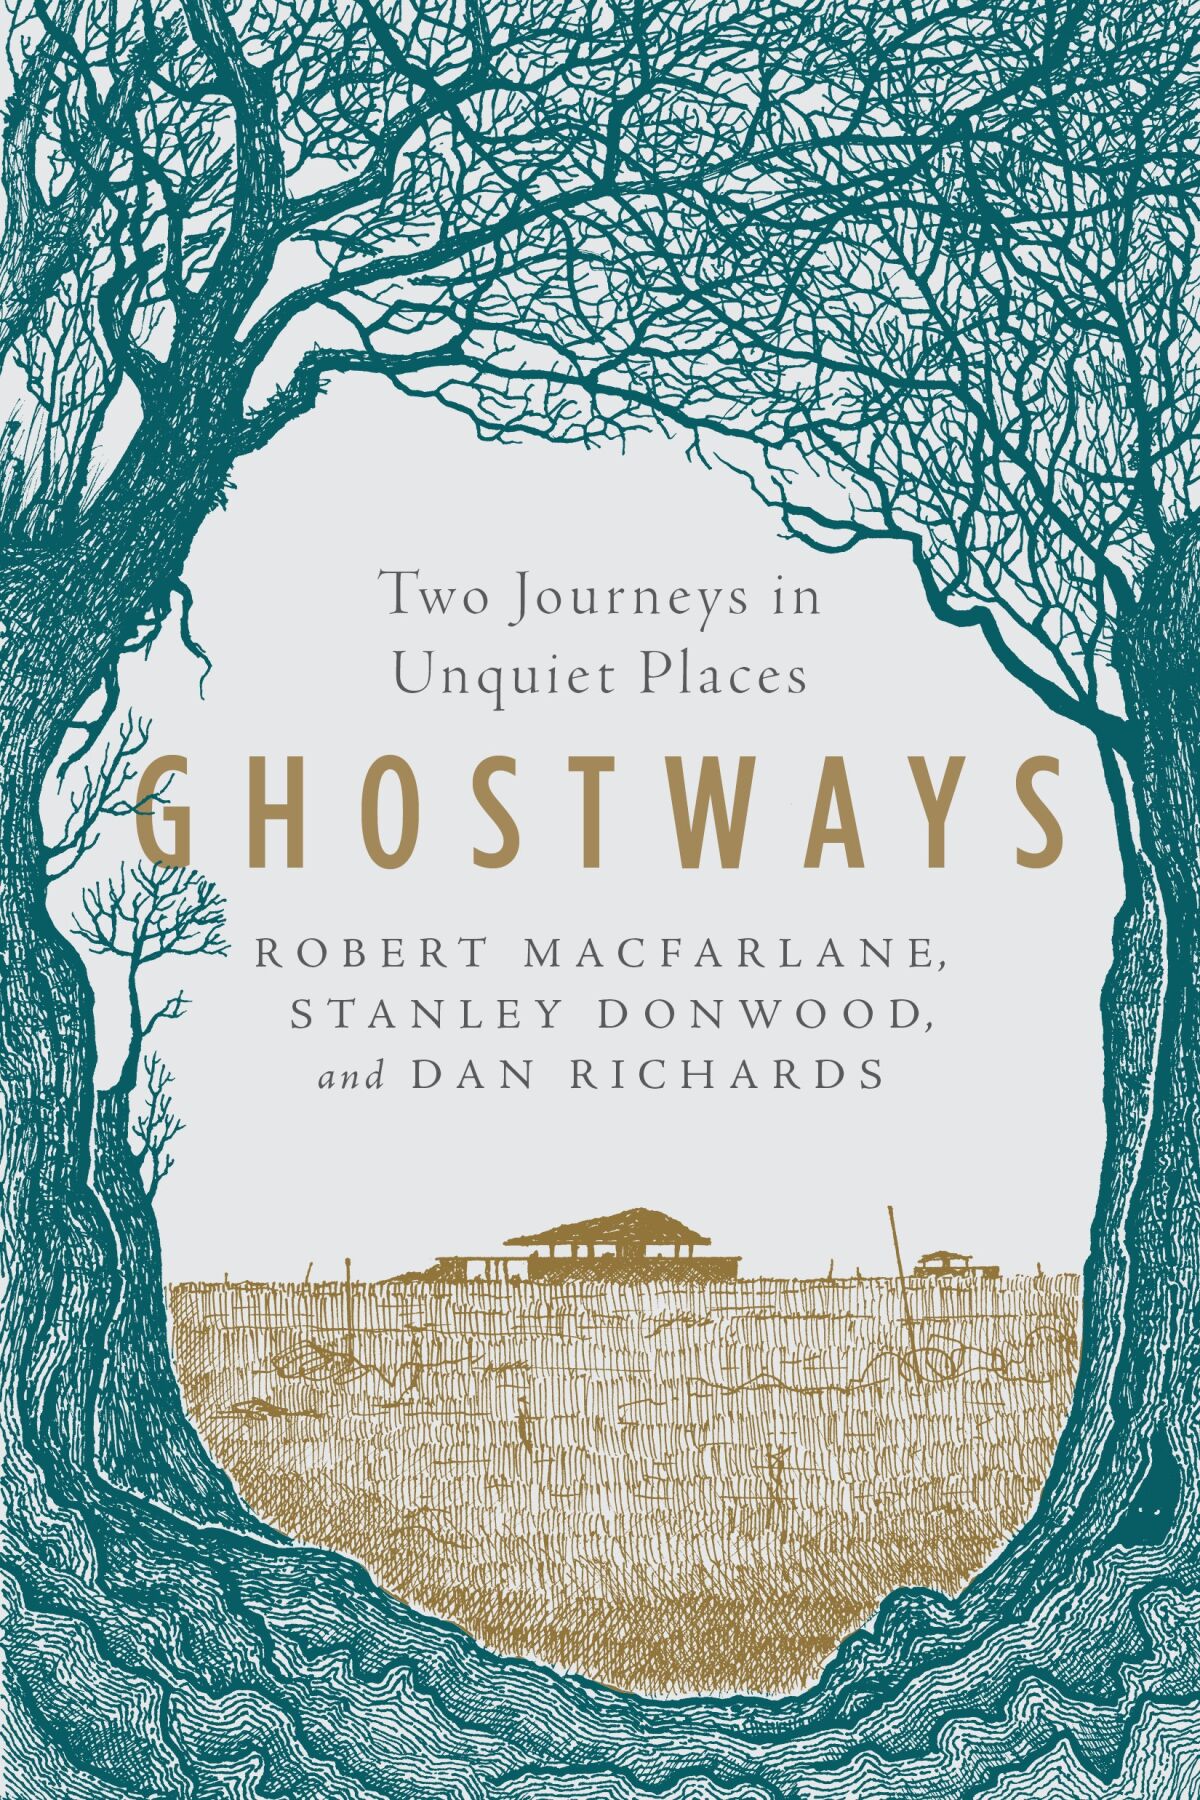 The cover of "Ghostways" by Robert Macfarlane